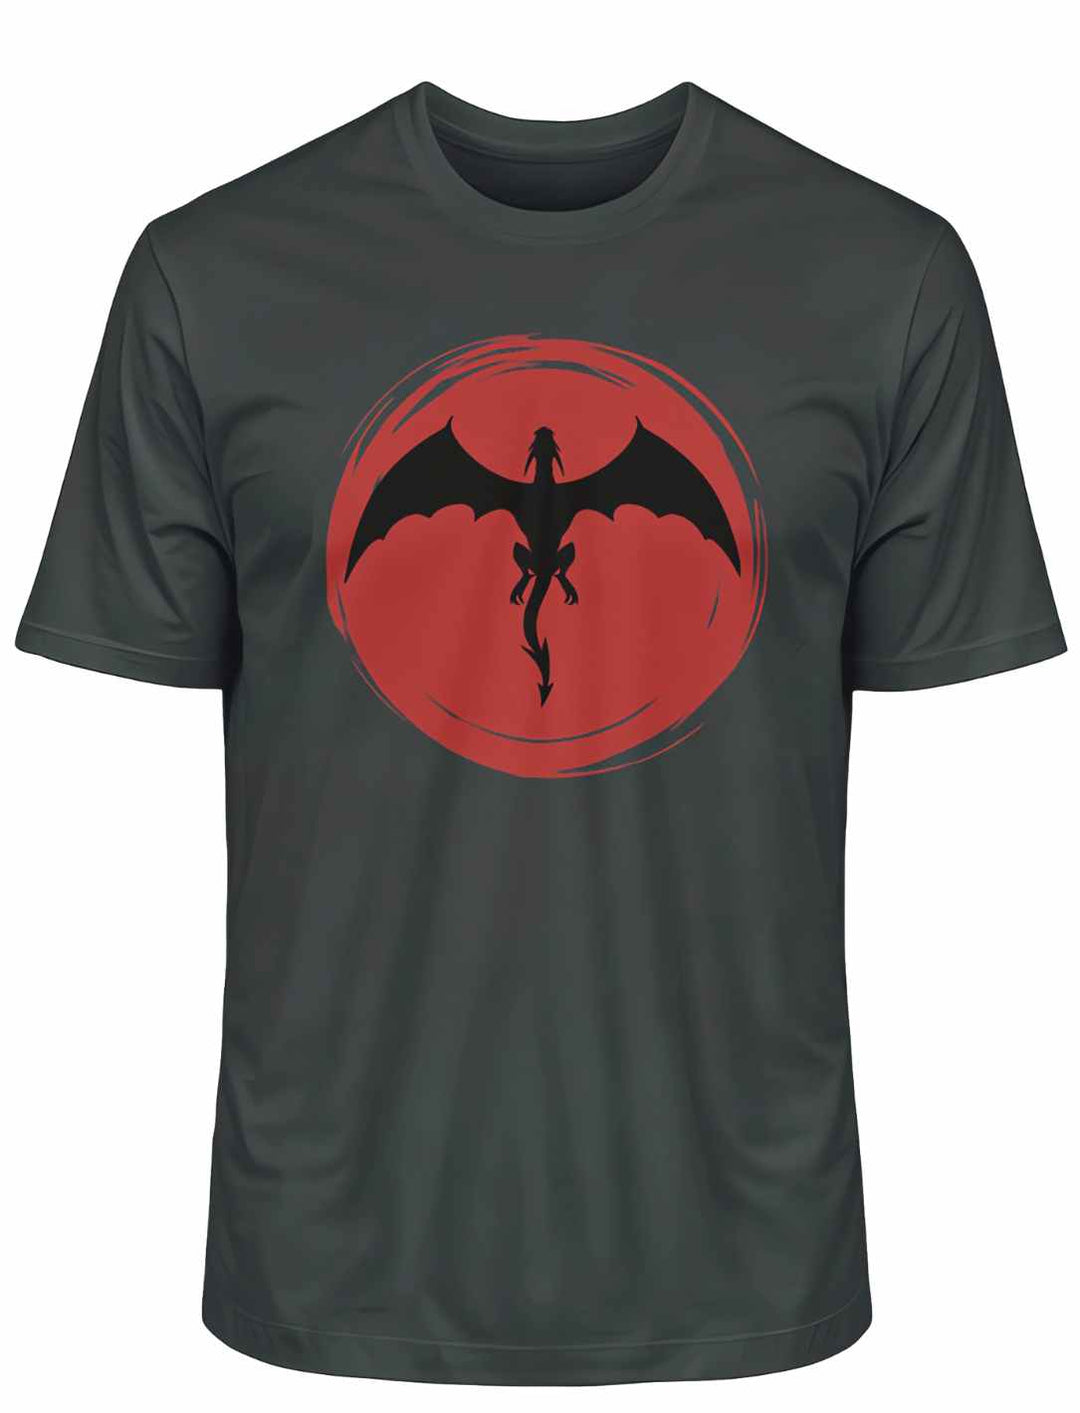 India Ink Grey 'Saga of the Dragon' Organic Unisex T-Shirt flach auf weißer Oberfläche, hebt das subtile Drachen-Design hervor.